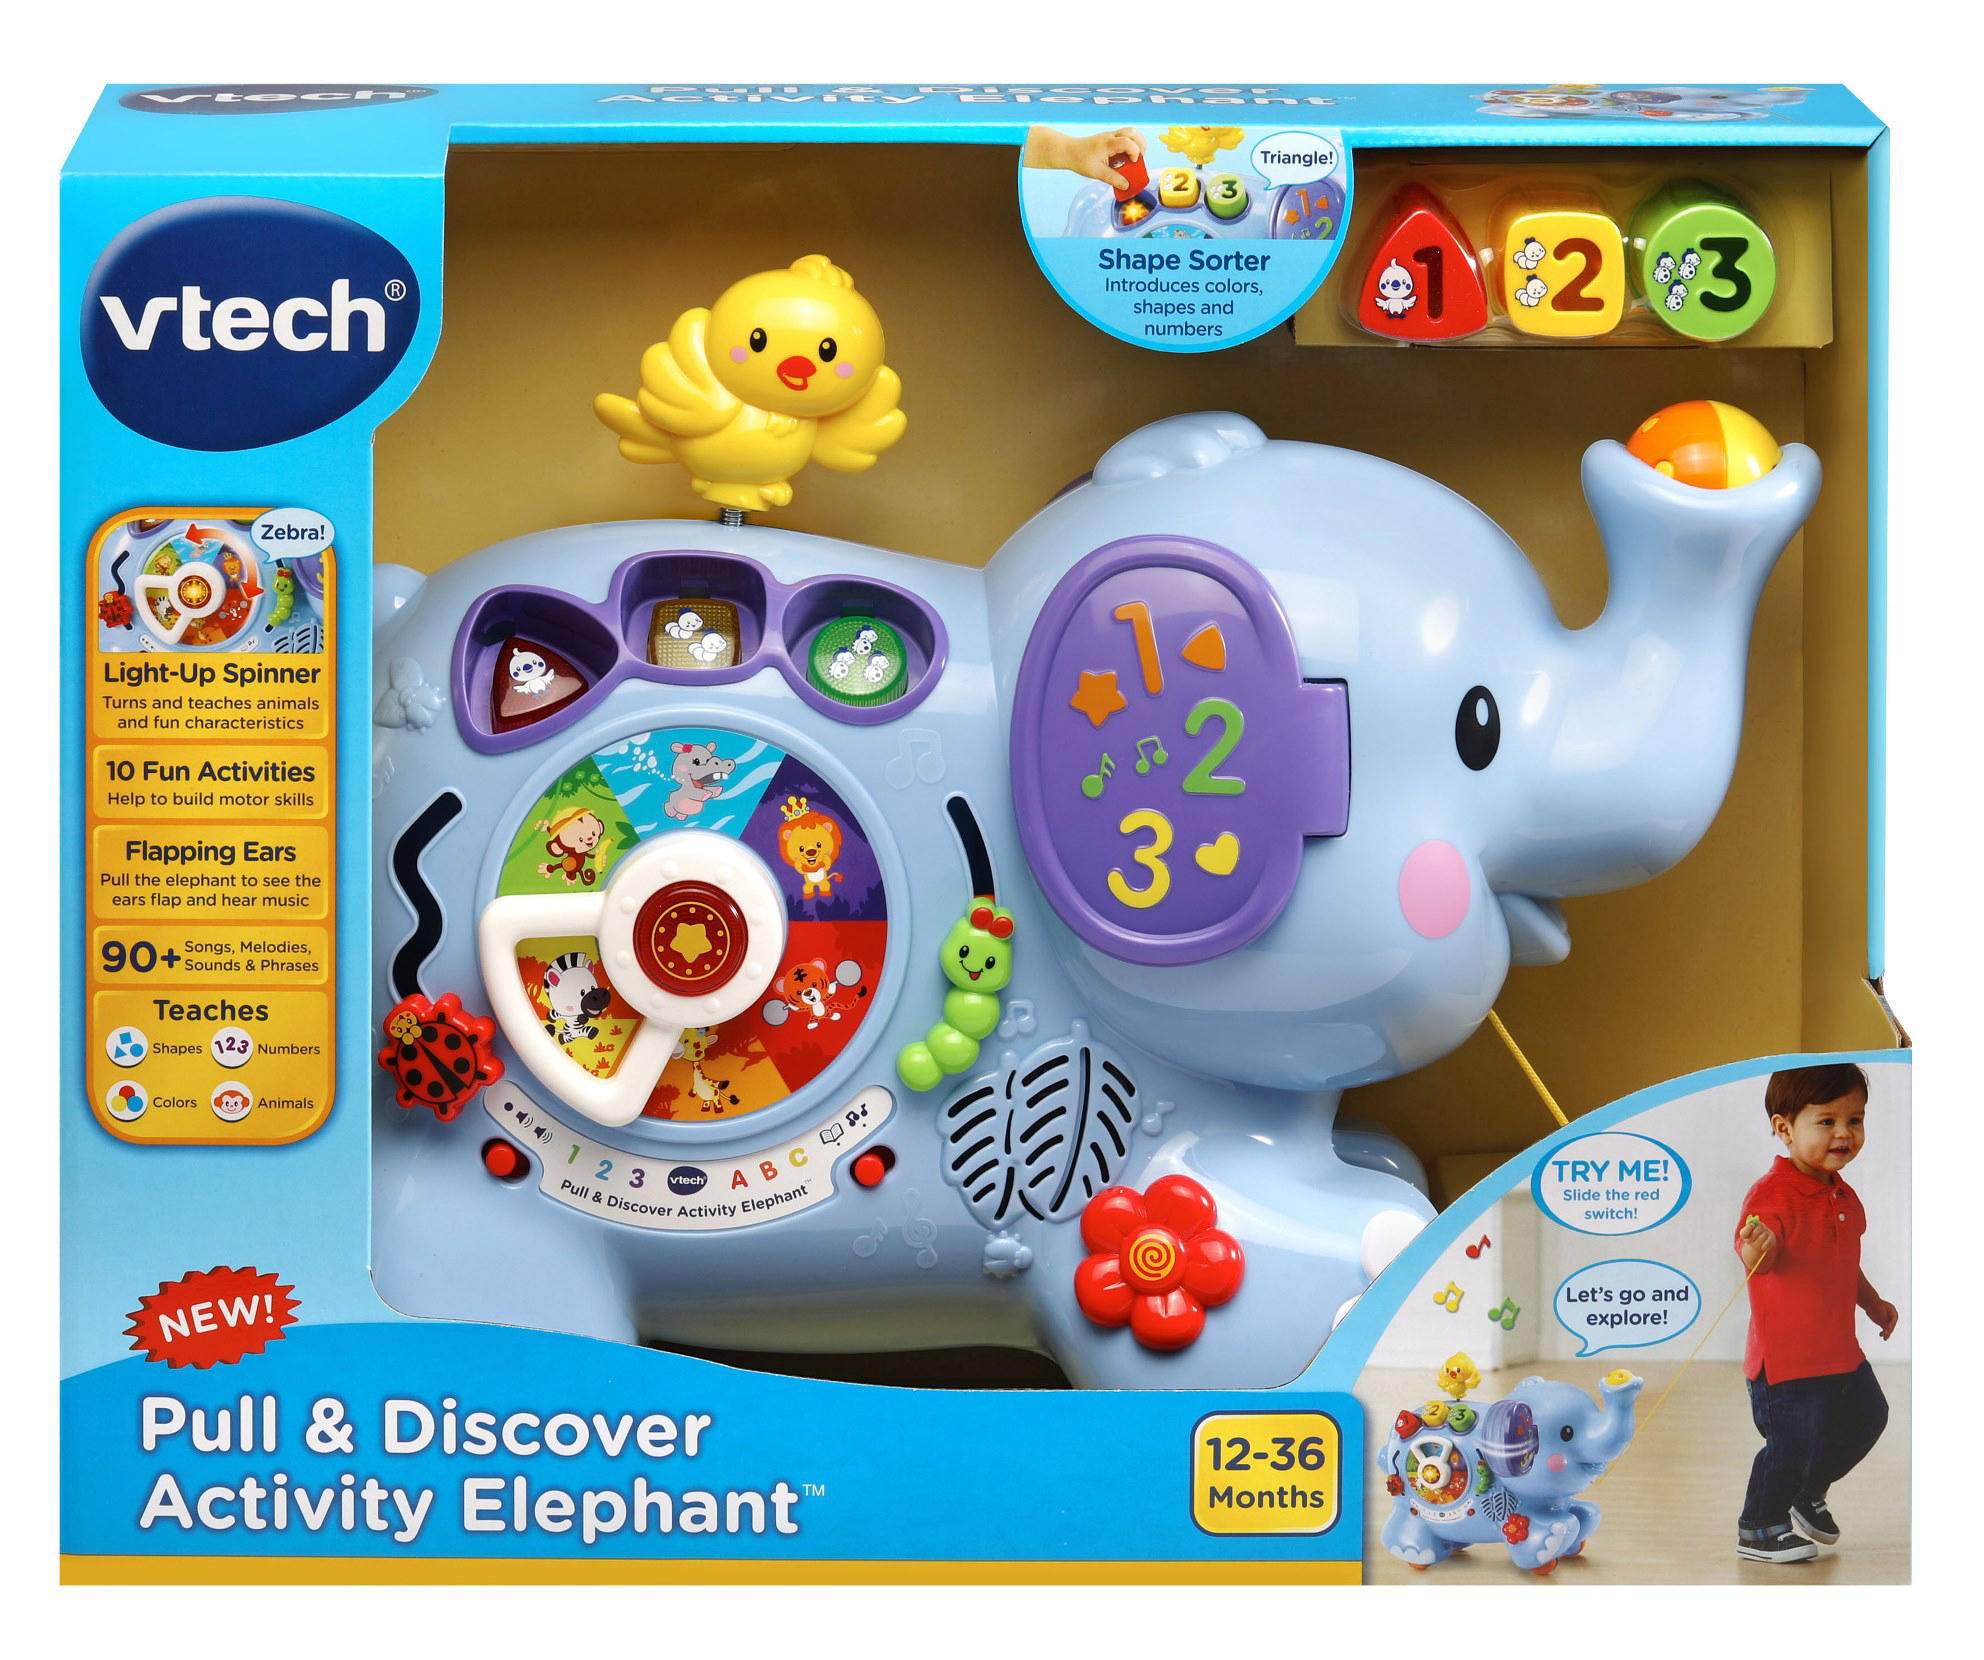 Play elephant. Vtech слон. Сортер Жук музыкальный. Интерактивный ползающий слон - Vtech. Vtech Kitten Pull & Play.